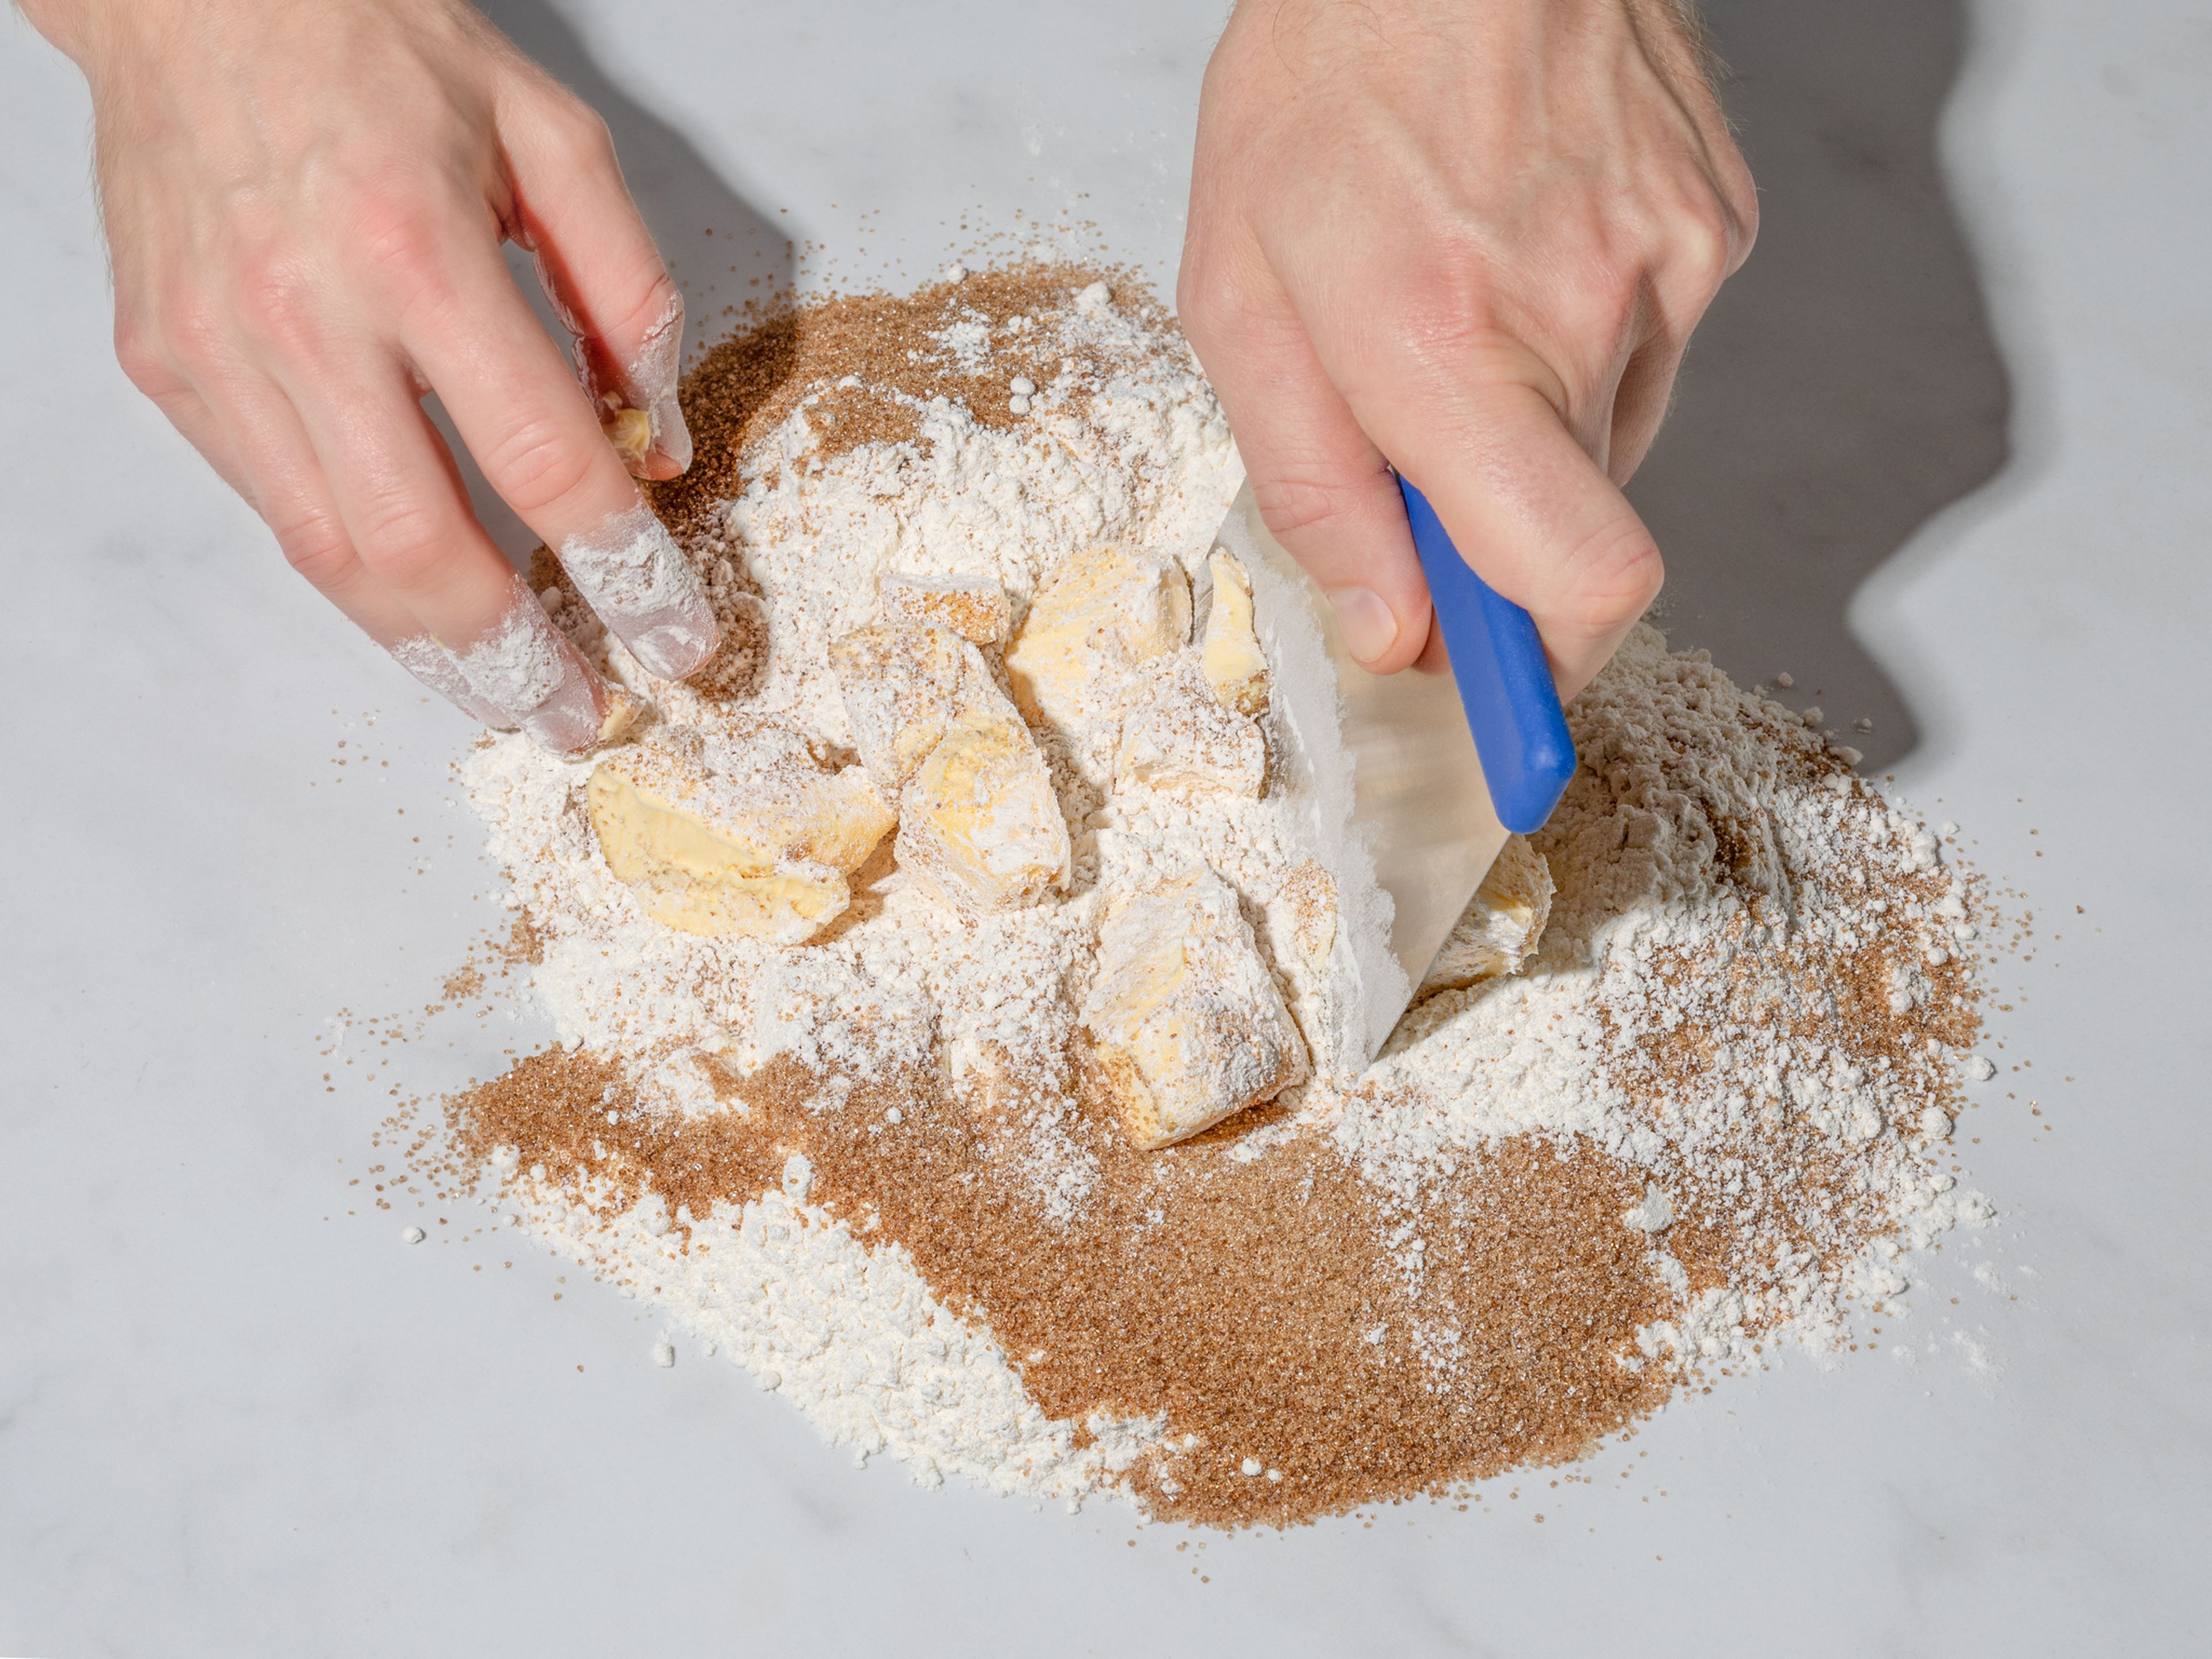 Für den Teig Mehl, braunen Zucker und Salz auf eine saubere Arbeitsfläche geben und in die Mitte eine Mulde drücken. Weiche Butter in Stücken und geriebenen Ingwer in die Mulde geben. Die Zutaten mit dem Teigschaber langsam miteinander vermengen. Sobald ein grober Teig entstanden ist, alles mit den Händen zu einem geschmeidigen Teig kneten. Teig in Frischhaltefolie wickeln und für ca. 30 Min. im Kühlschrank ruhen lassen.